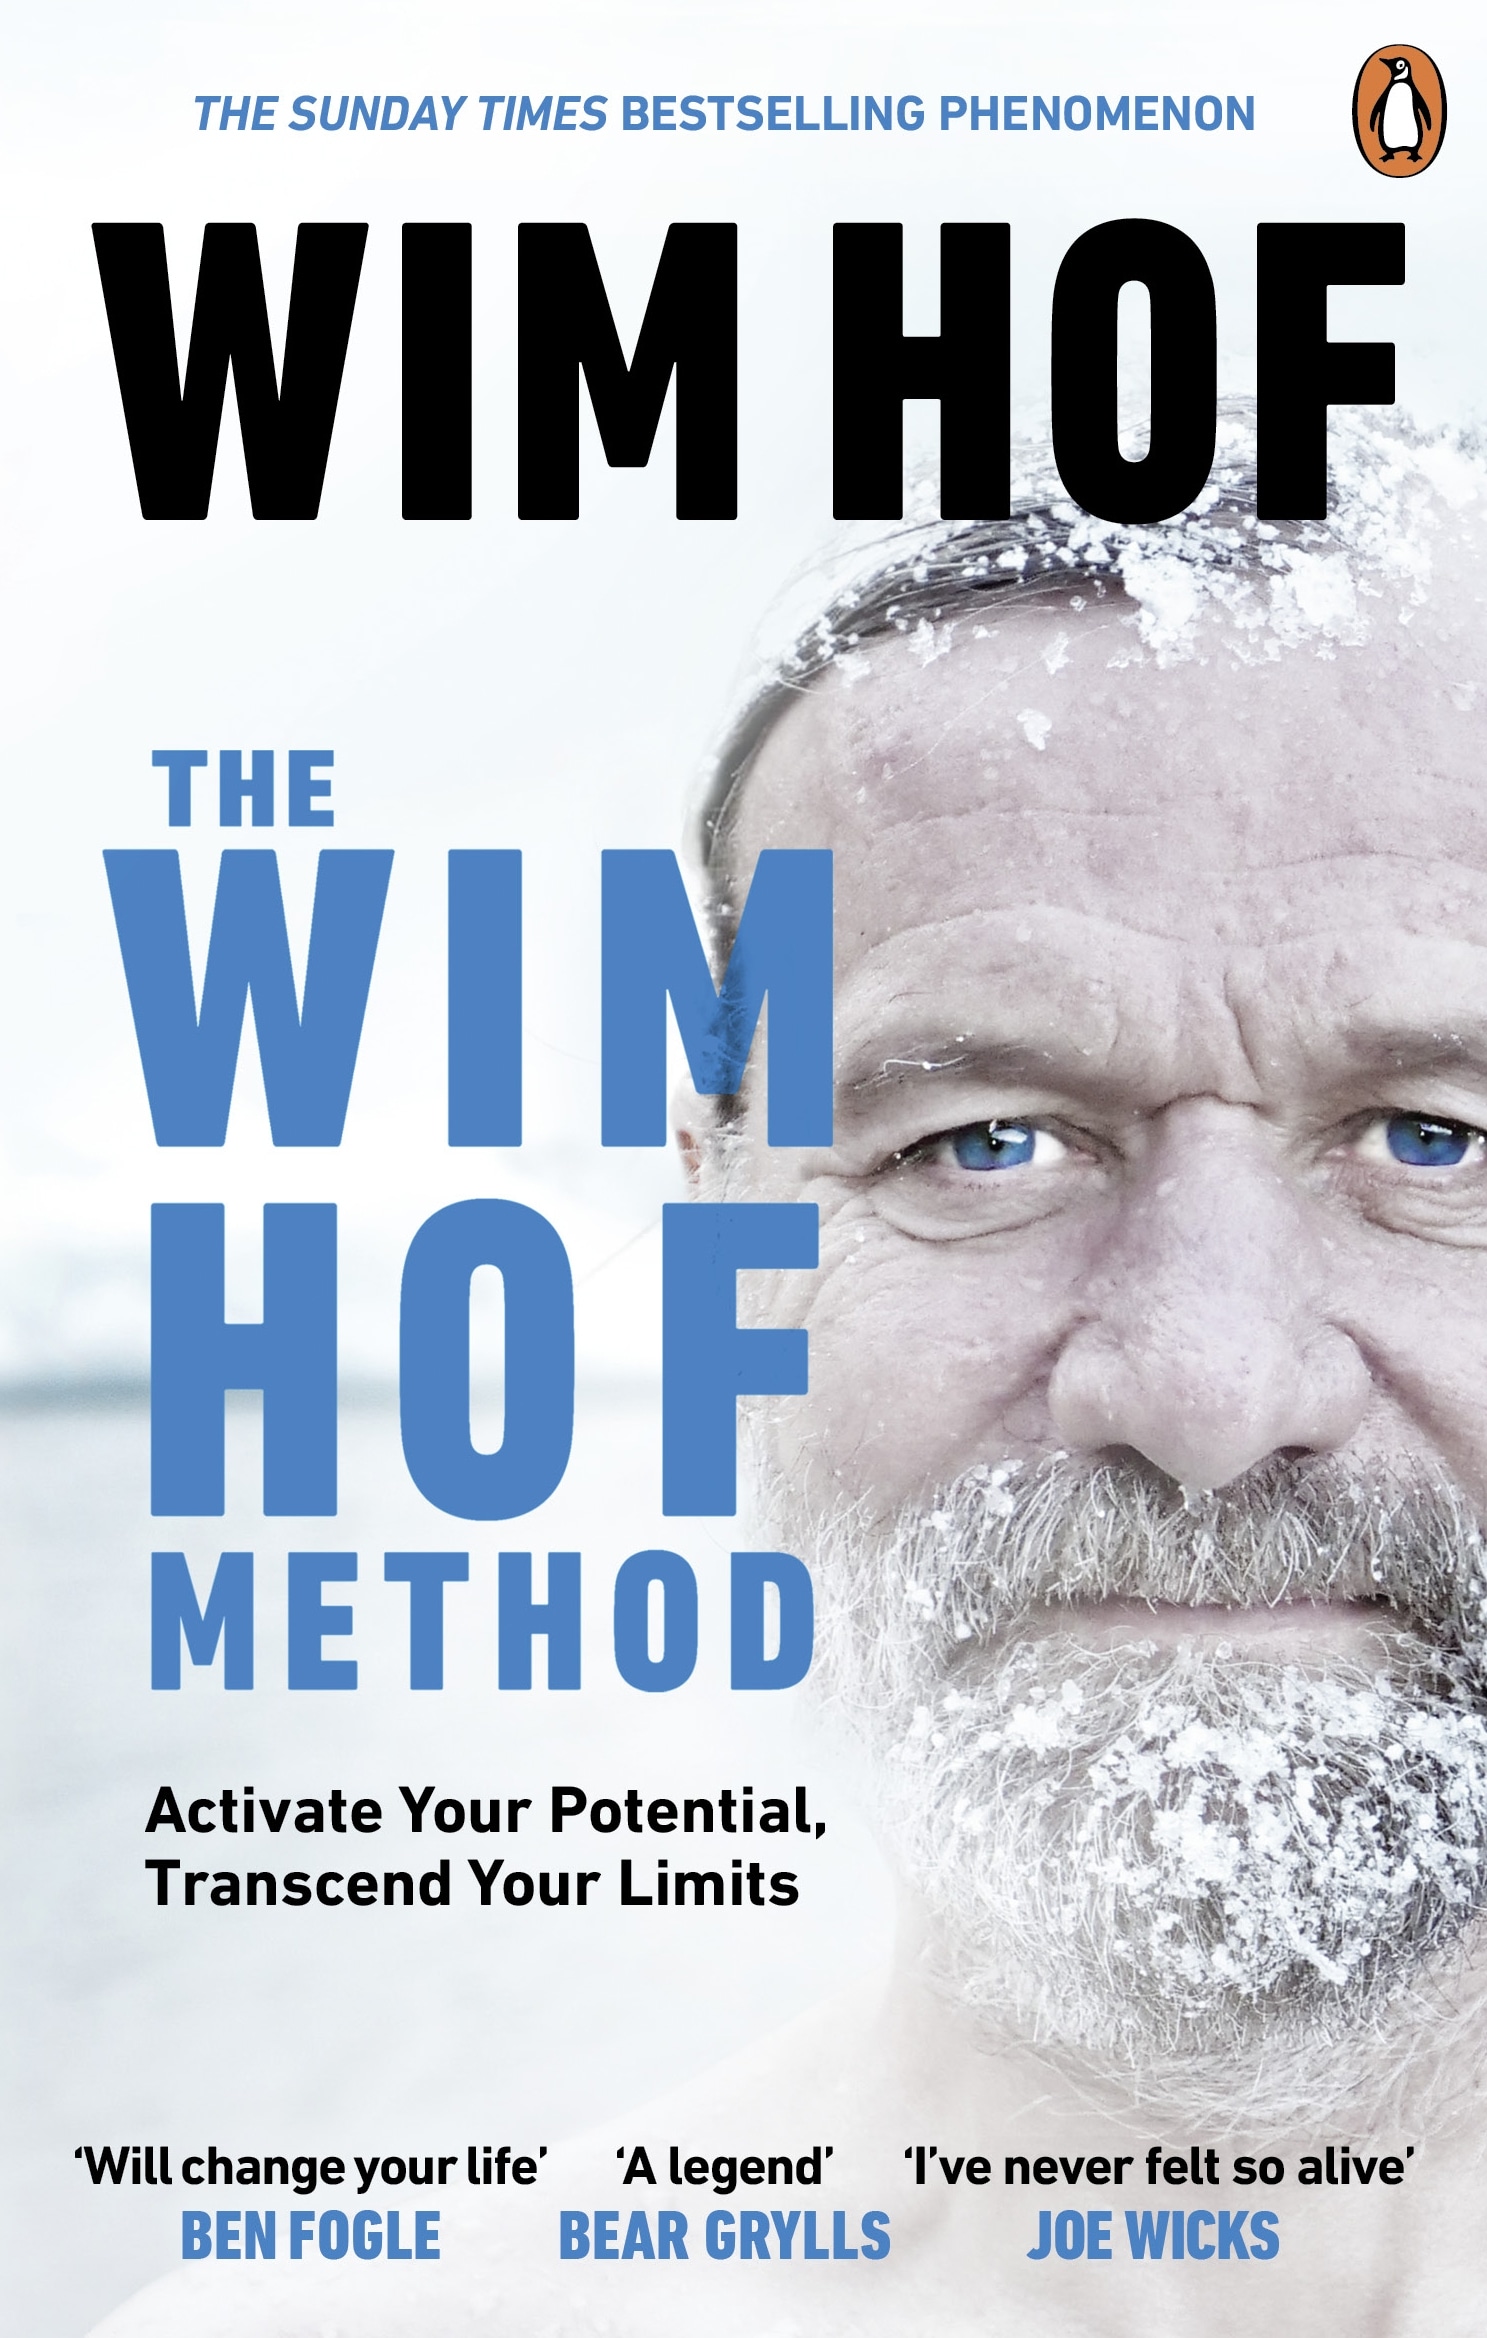 Book “The Wim Hof Method” by Wim Hof — June 2, 2022